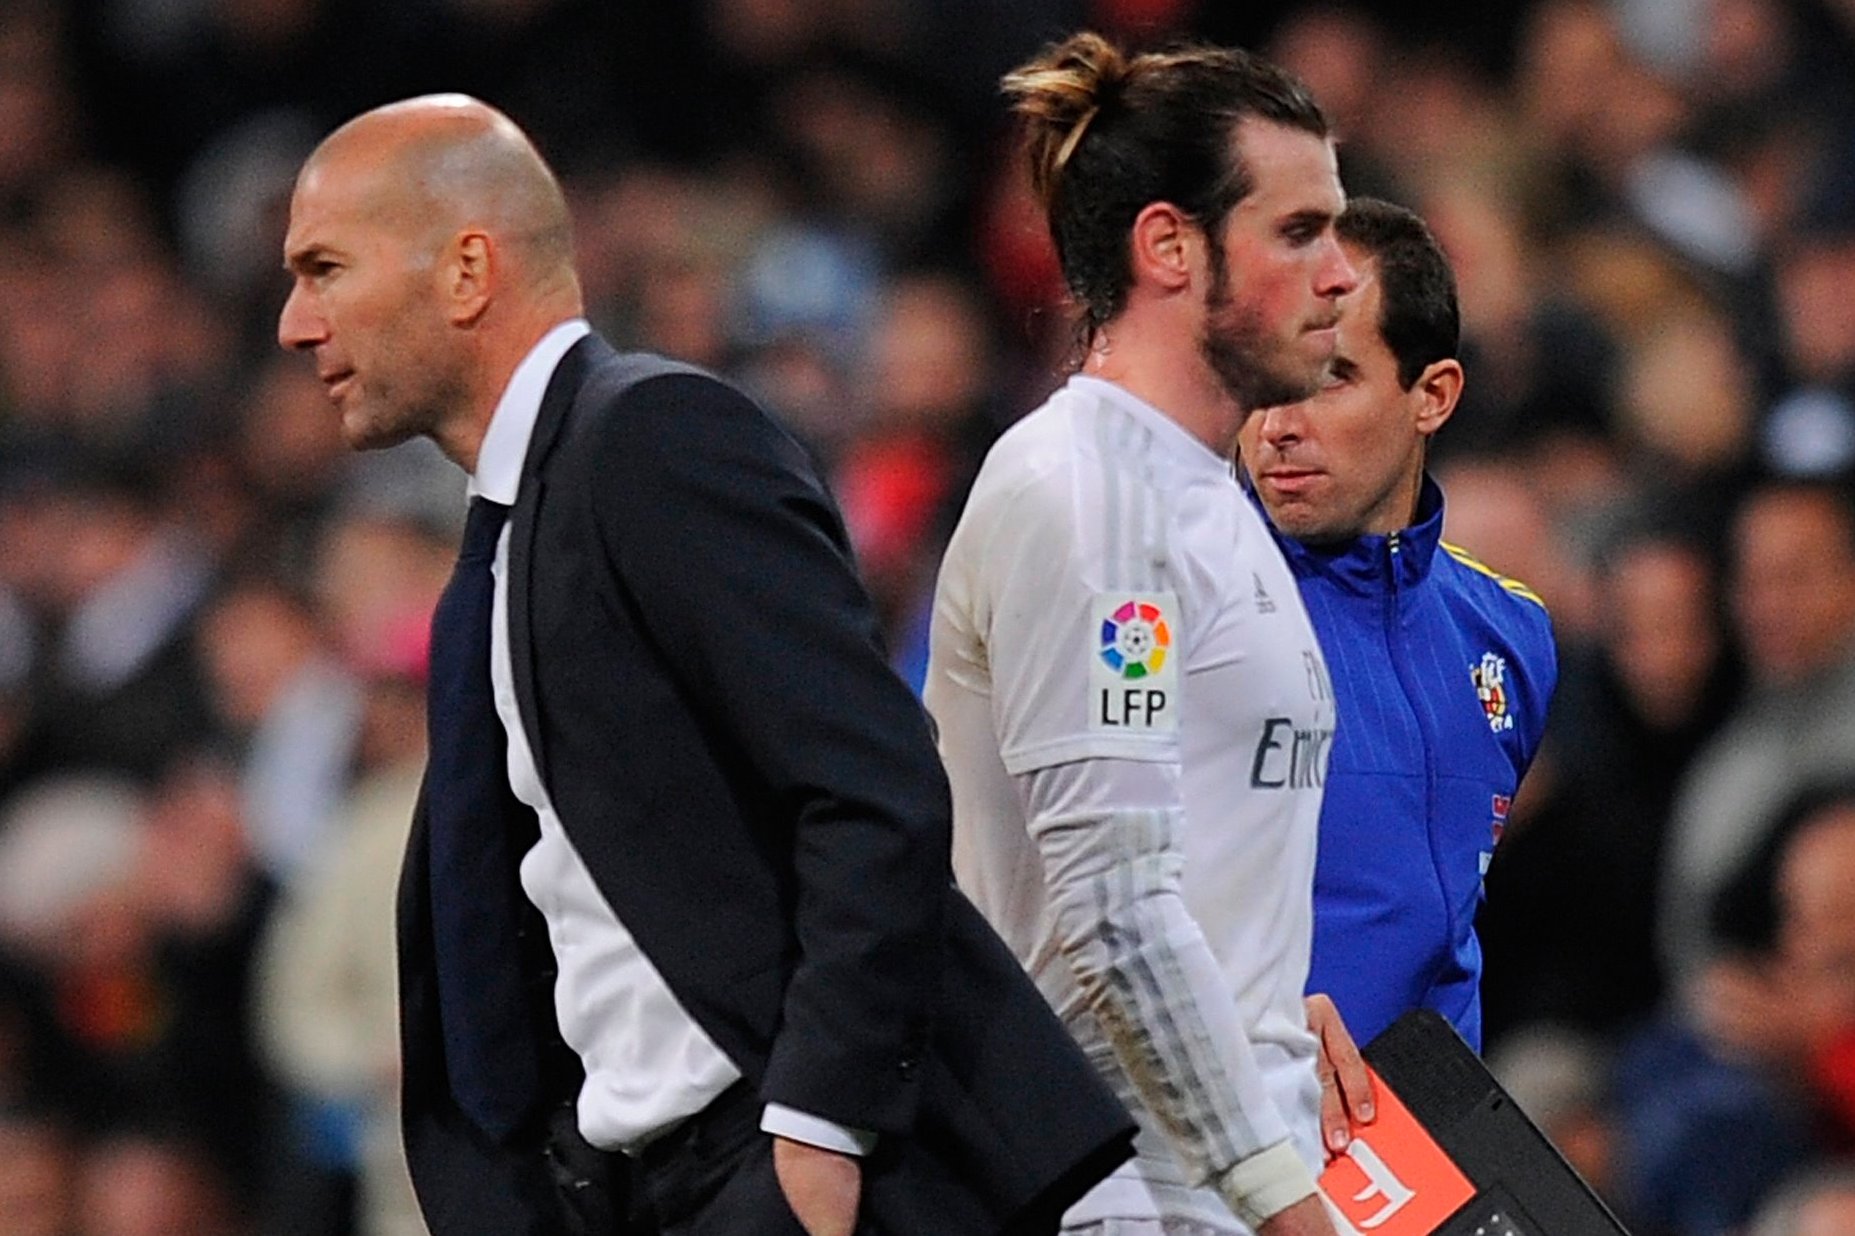 Câu chuyện đằng sau sự đổ vỡ của Bale và Zidane hình ảnh